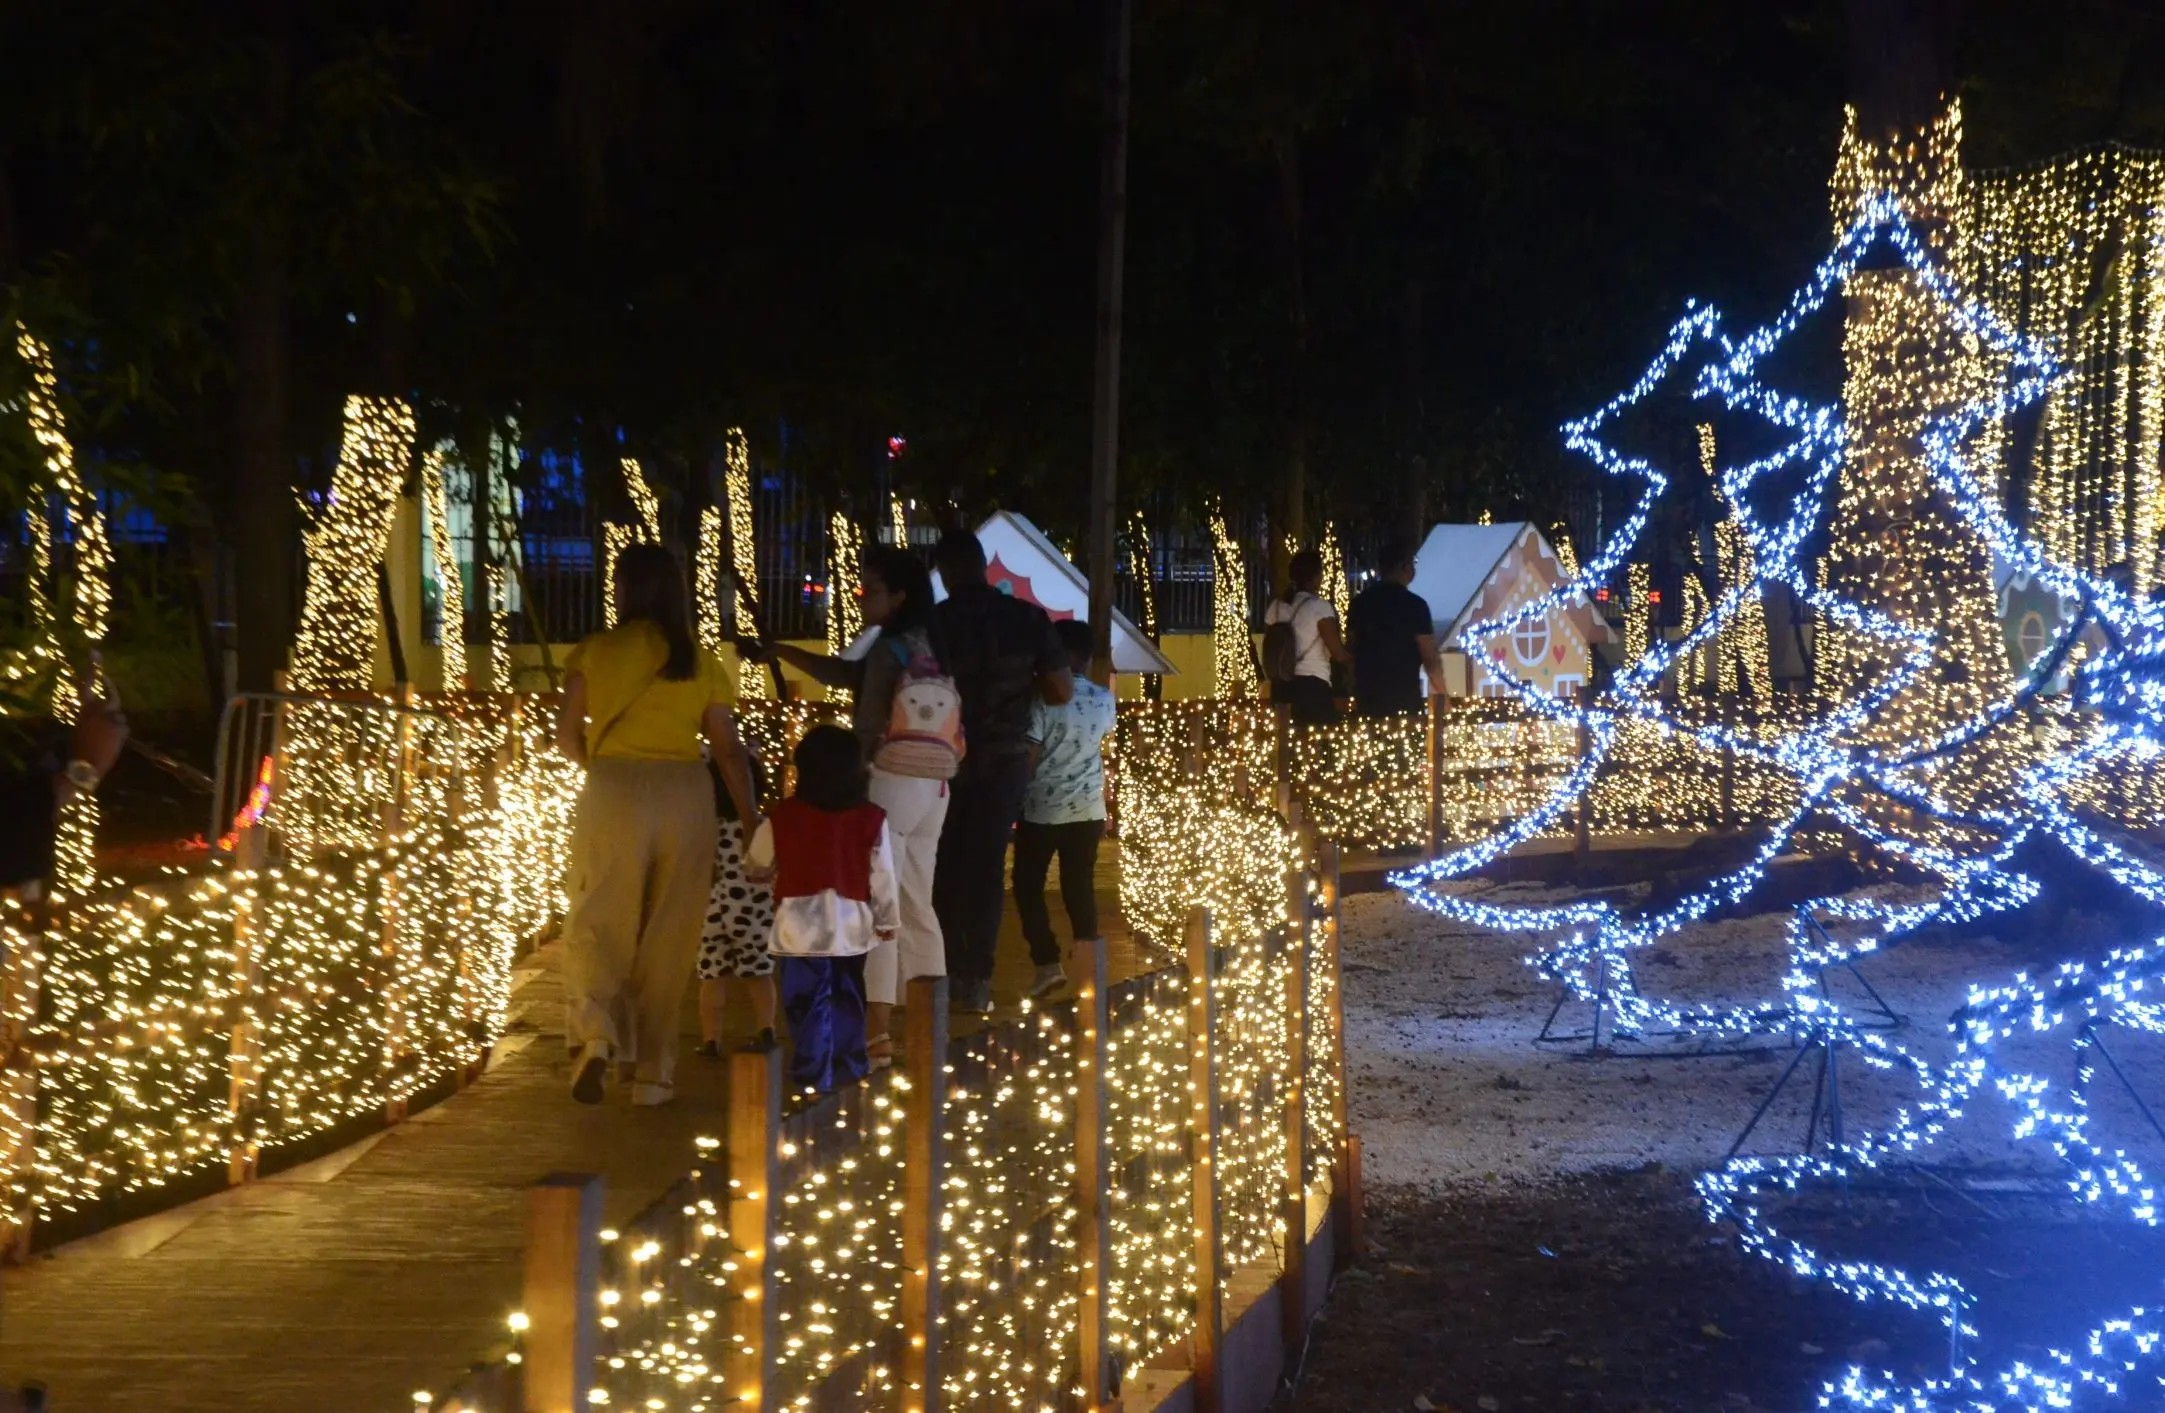 Villa Navidad: Con diversión, magia, luces y esplendor vuelve a reunir a miles de personas